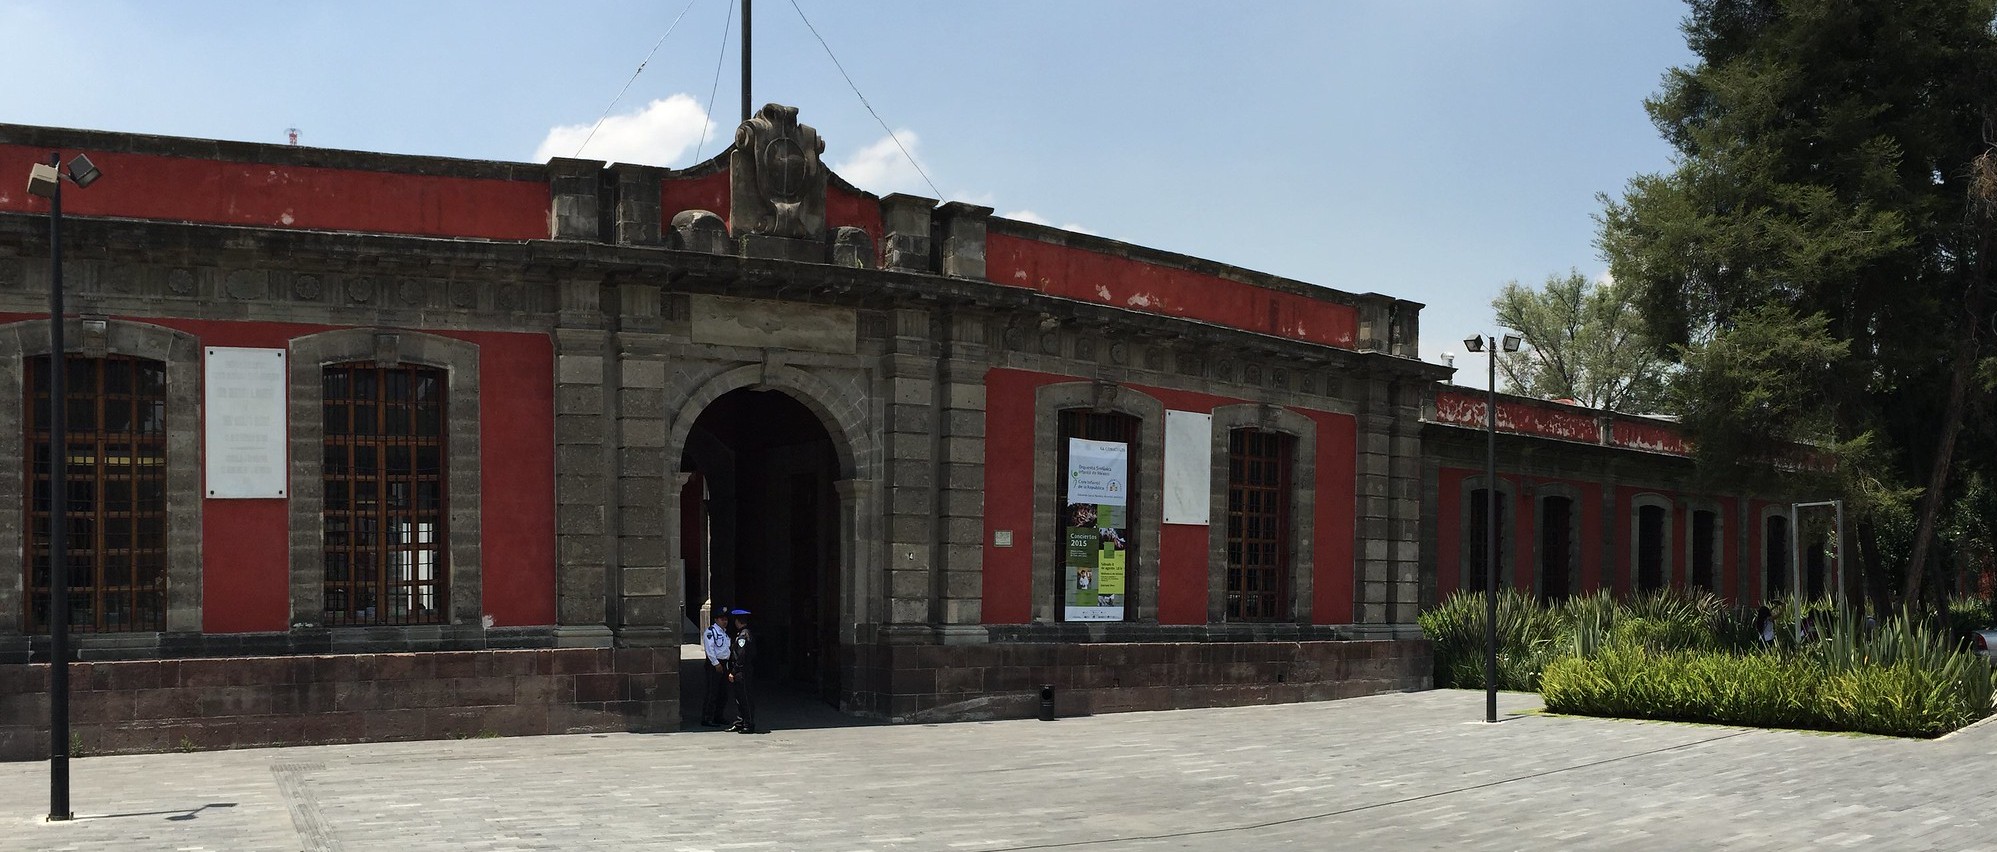 La Ciudadela - Library of Mexico 